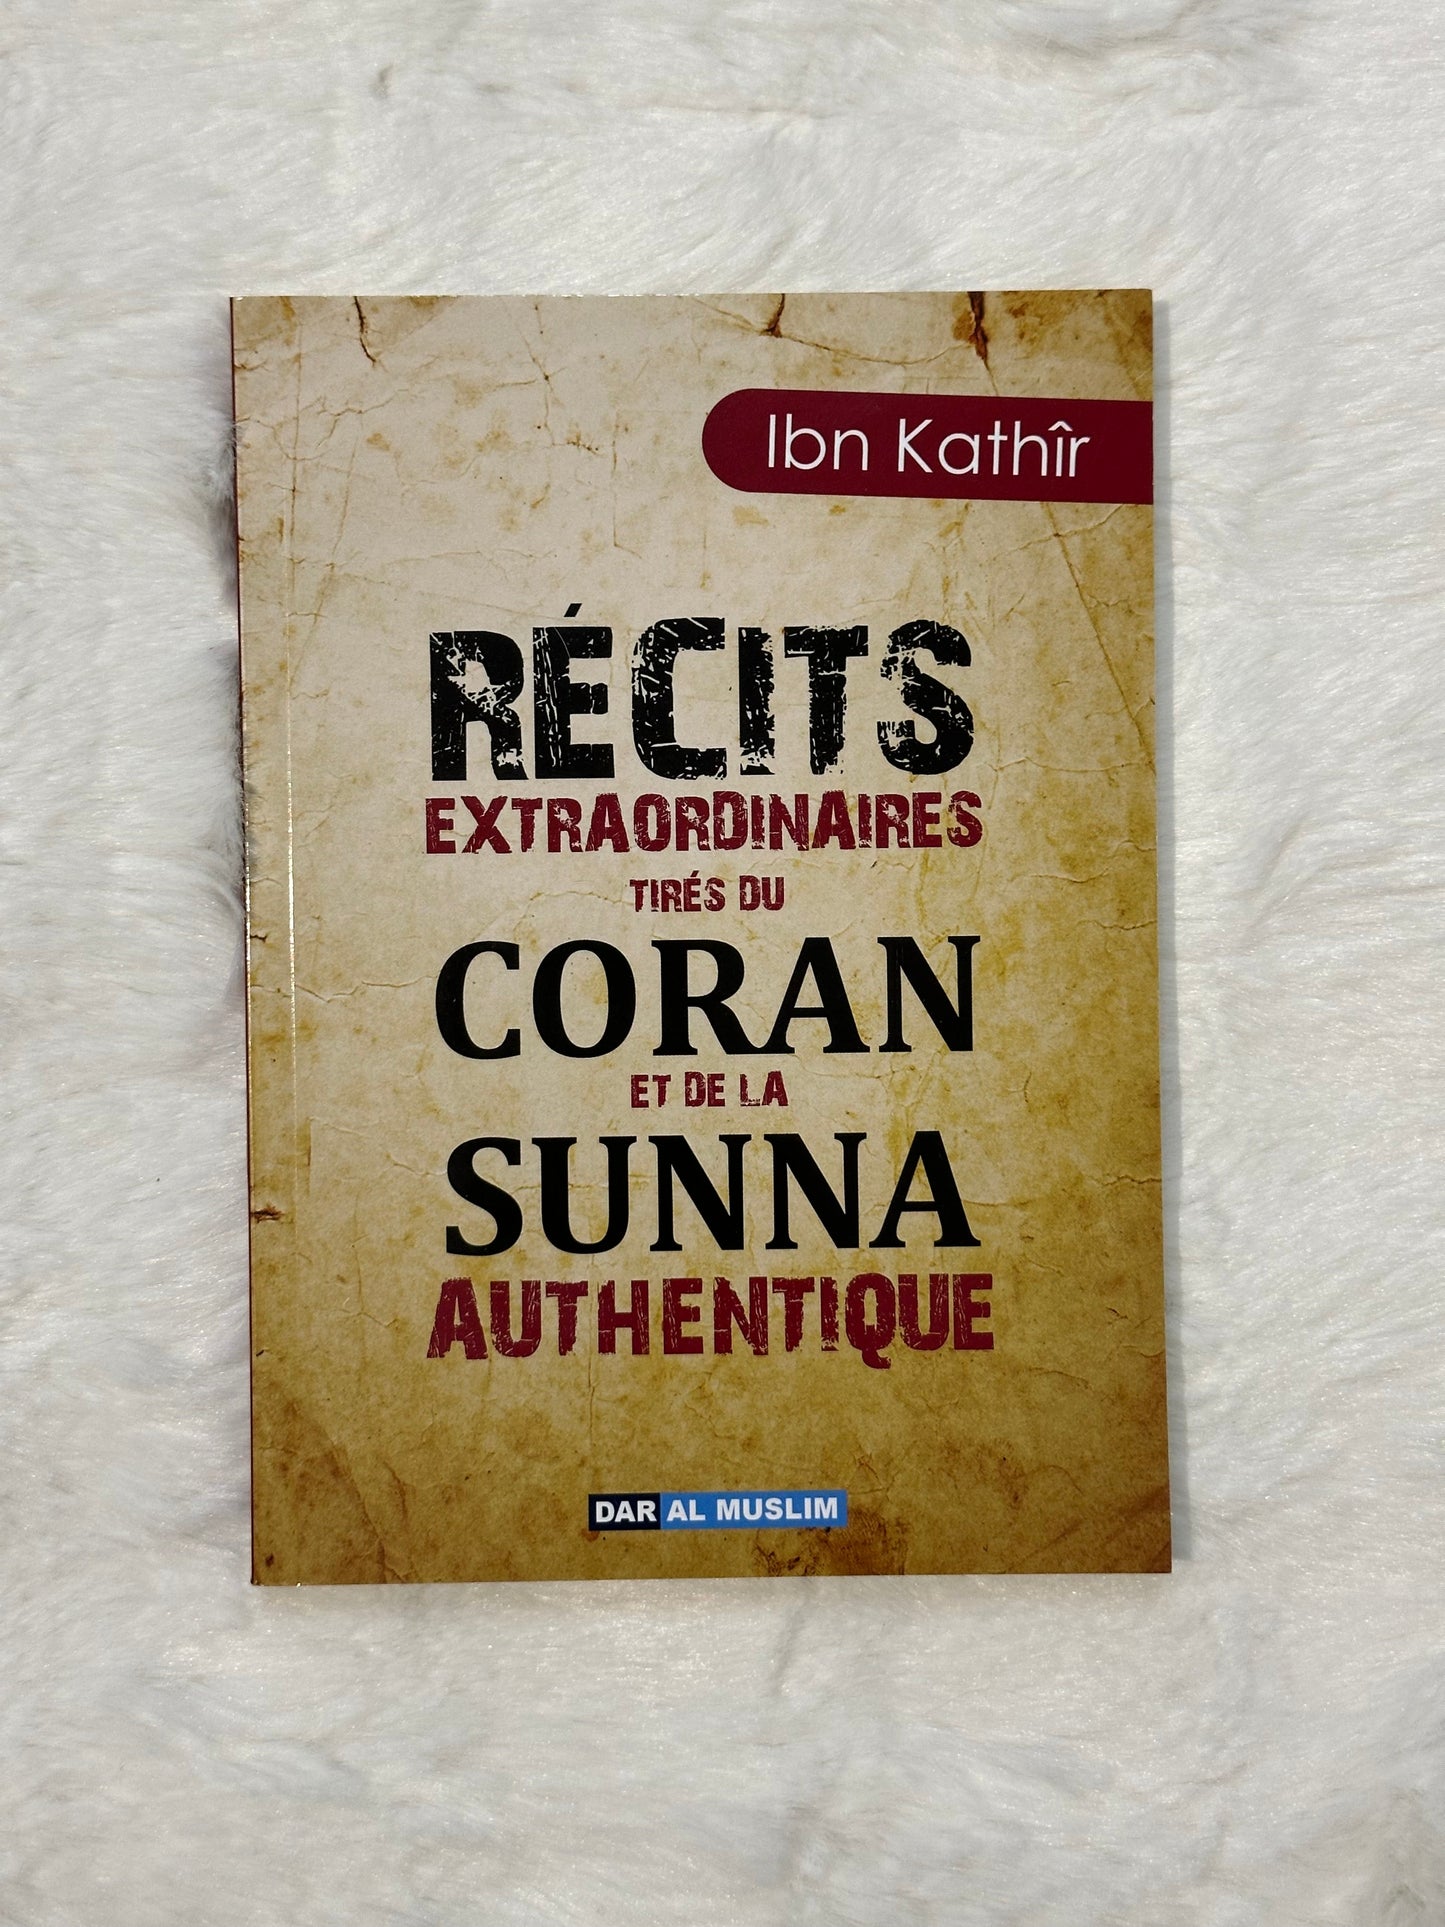 Récits extraordinaires tirés du Coran et de la sunna authentique – Éditions Dar Al Muslim